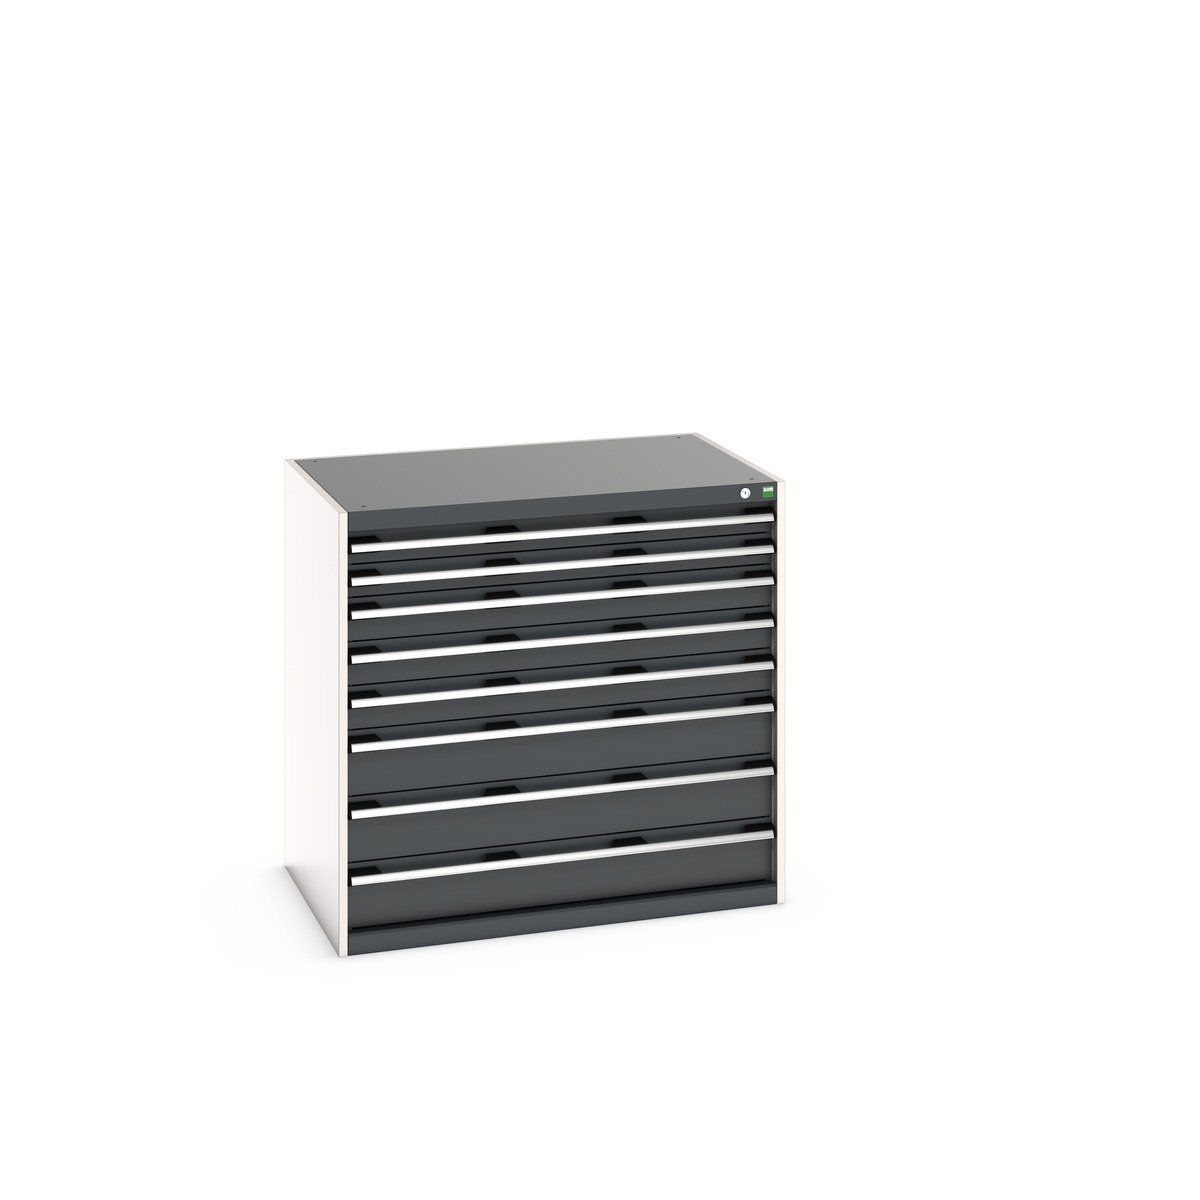 40029026.19V - cubio drawer cabinet